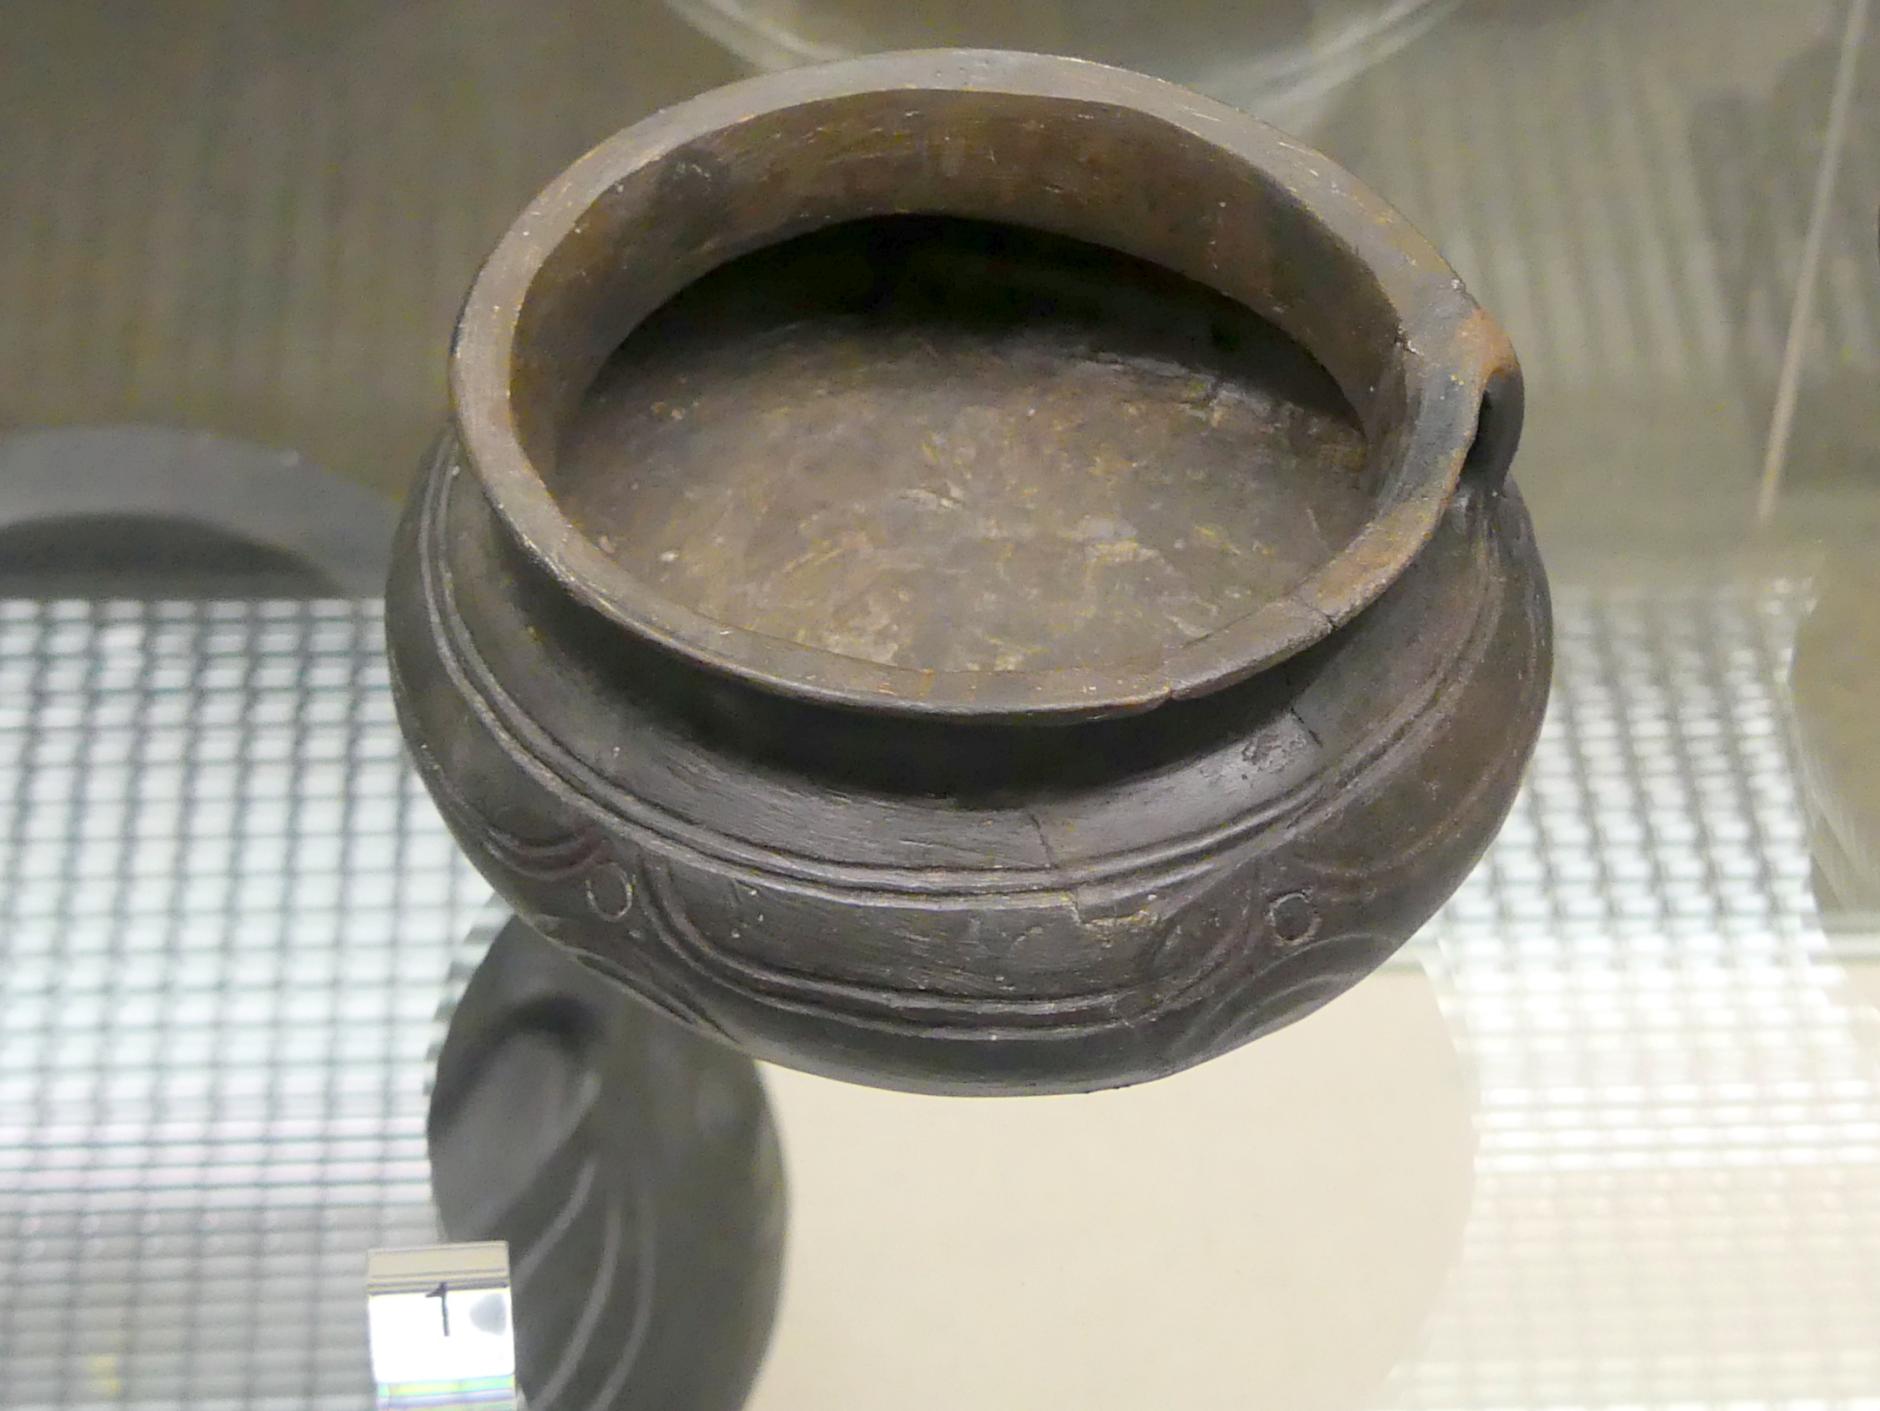 Trichterhalsgefäß, Urnenfelderzeit, 1400 - 700 v. Chr.